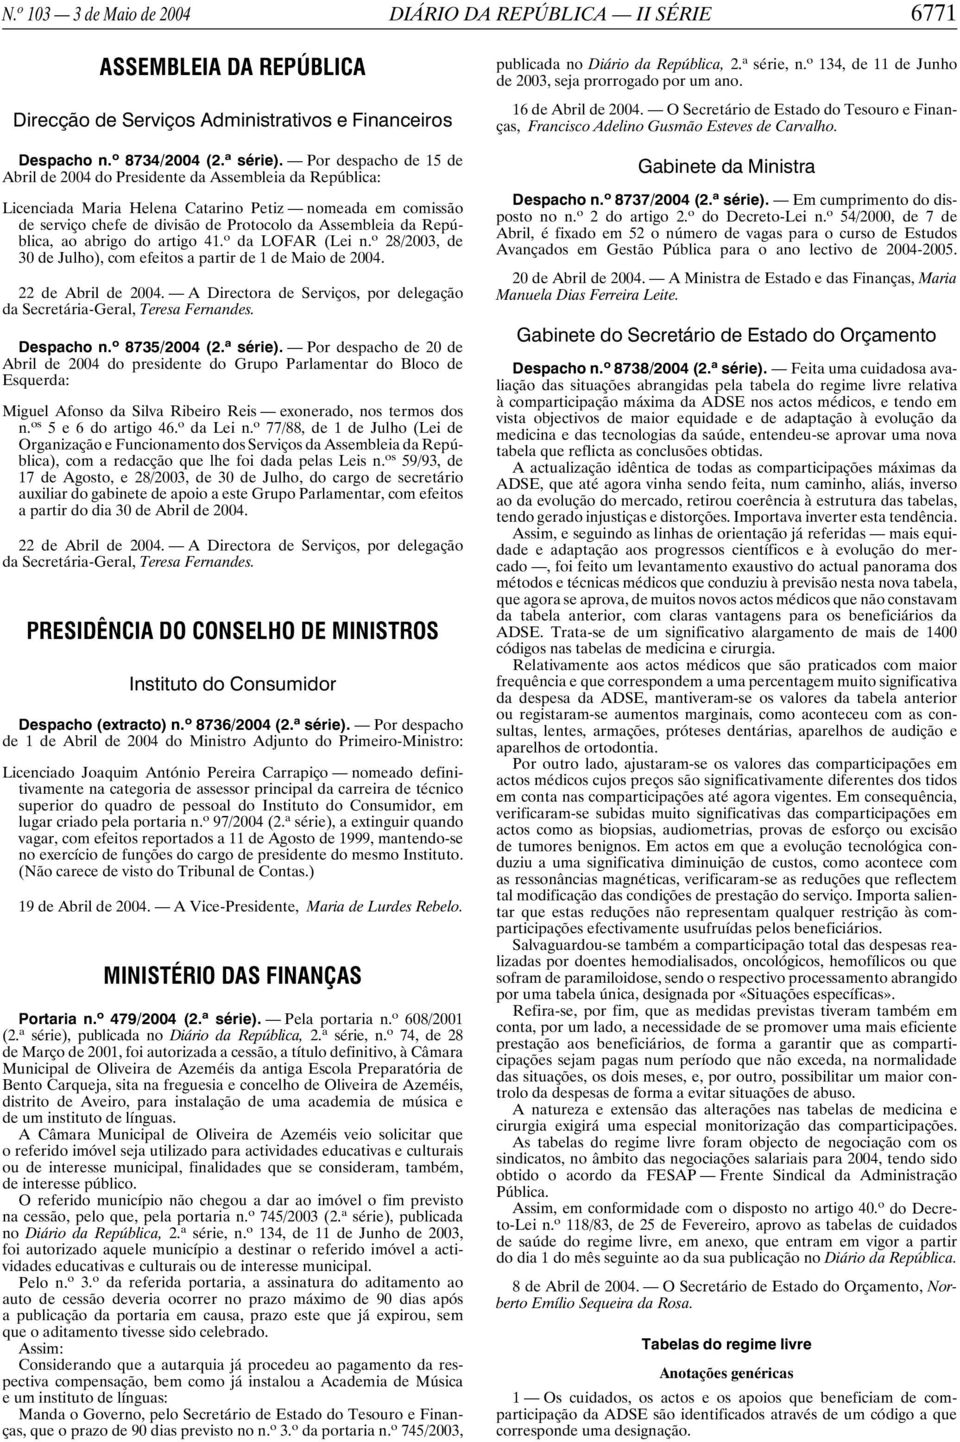 República, ao abrigo do artigo 41. o da LOFAR (Lei n. o 28/2003, de 30 de Julho), com efeitos a partir de 1 de Maio de 2004. 22 de Abril de 2004.